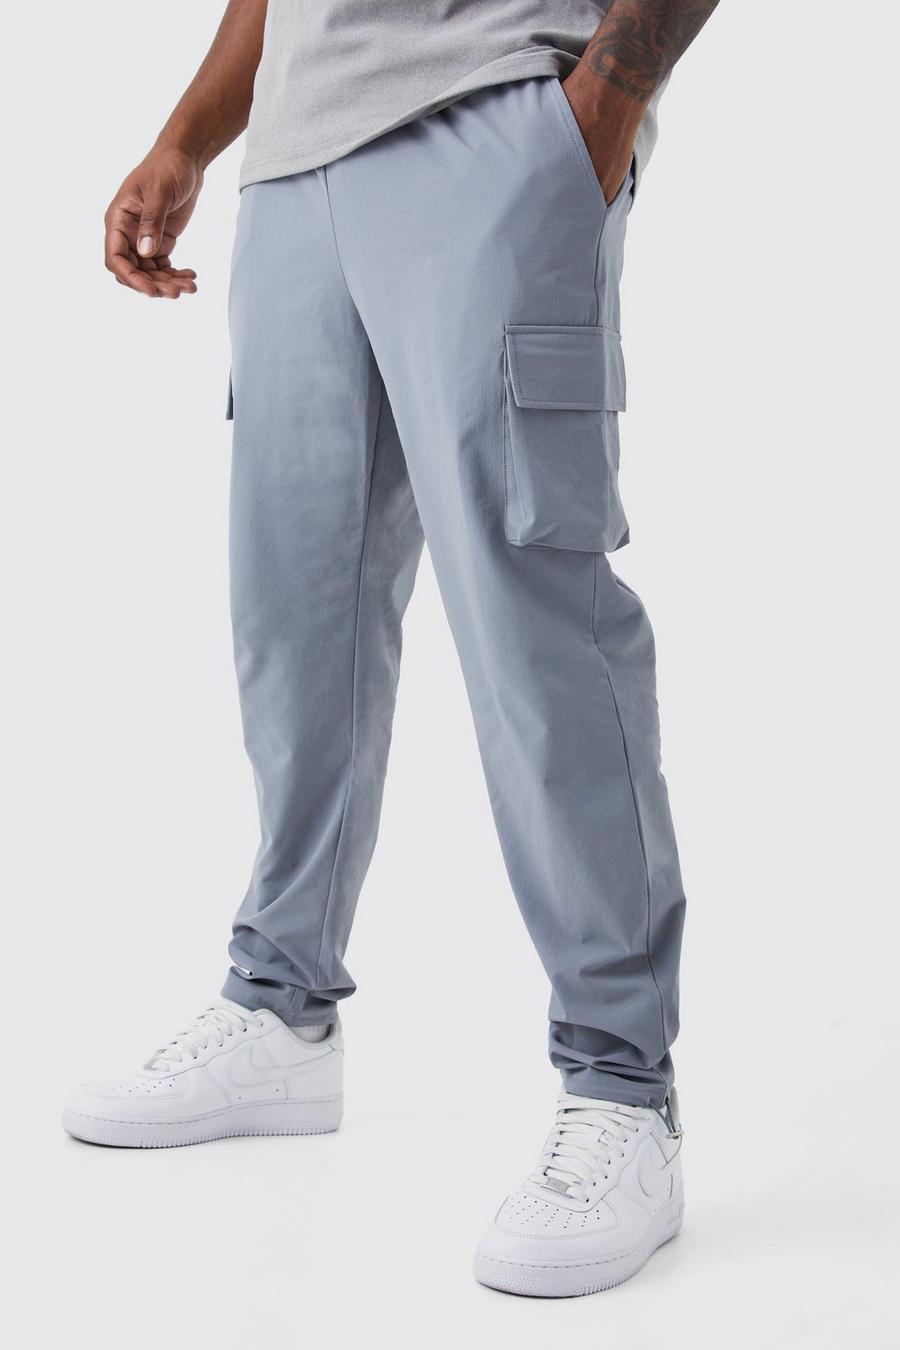 Pantalón Plus pitillo cargo elástico ligero, Light grey